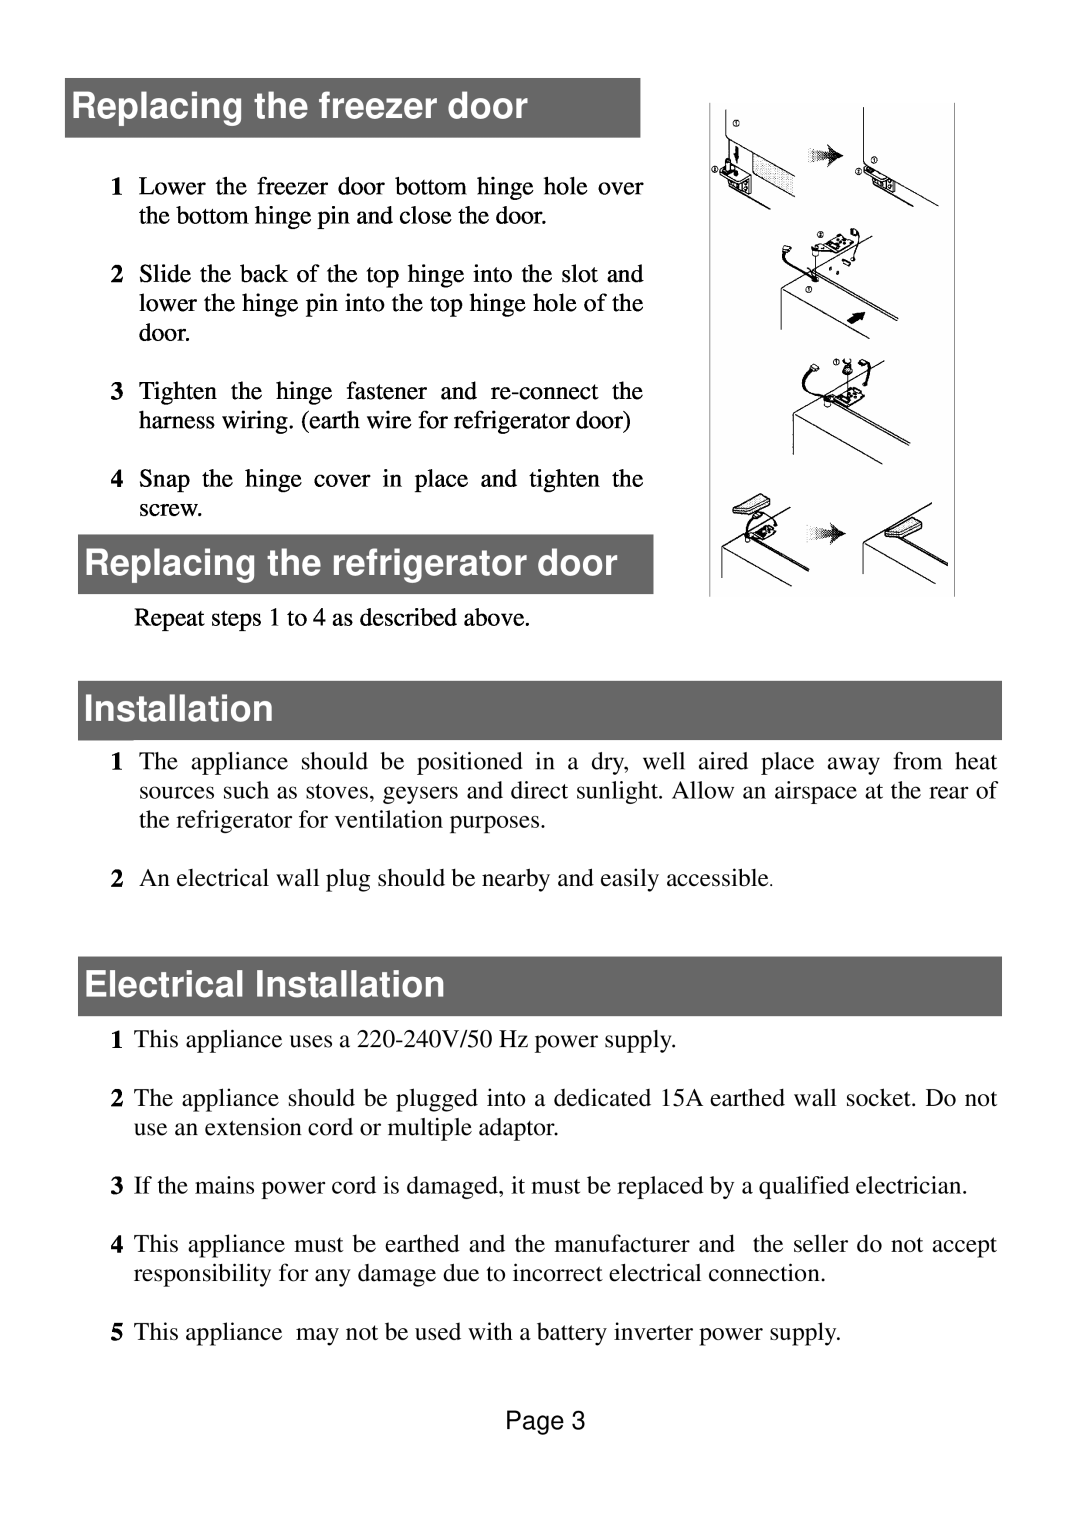 Defy Appliances 570 owner manual Replacing the freezer door, Replacing the refrigerator door, Electrical Installation 